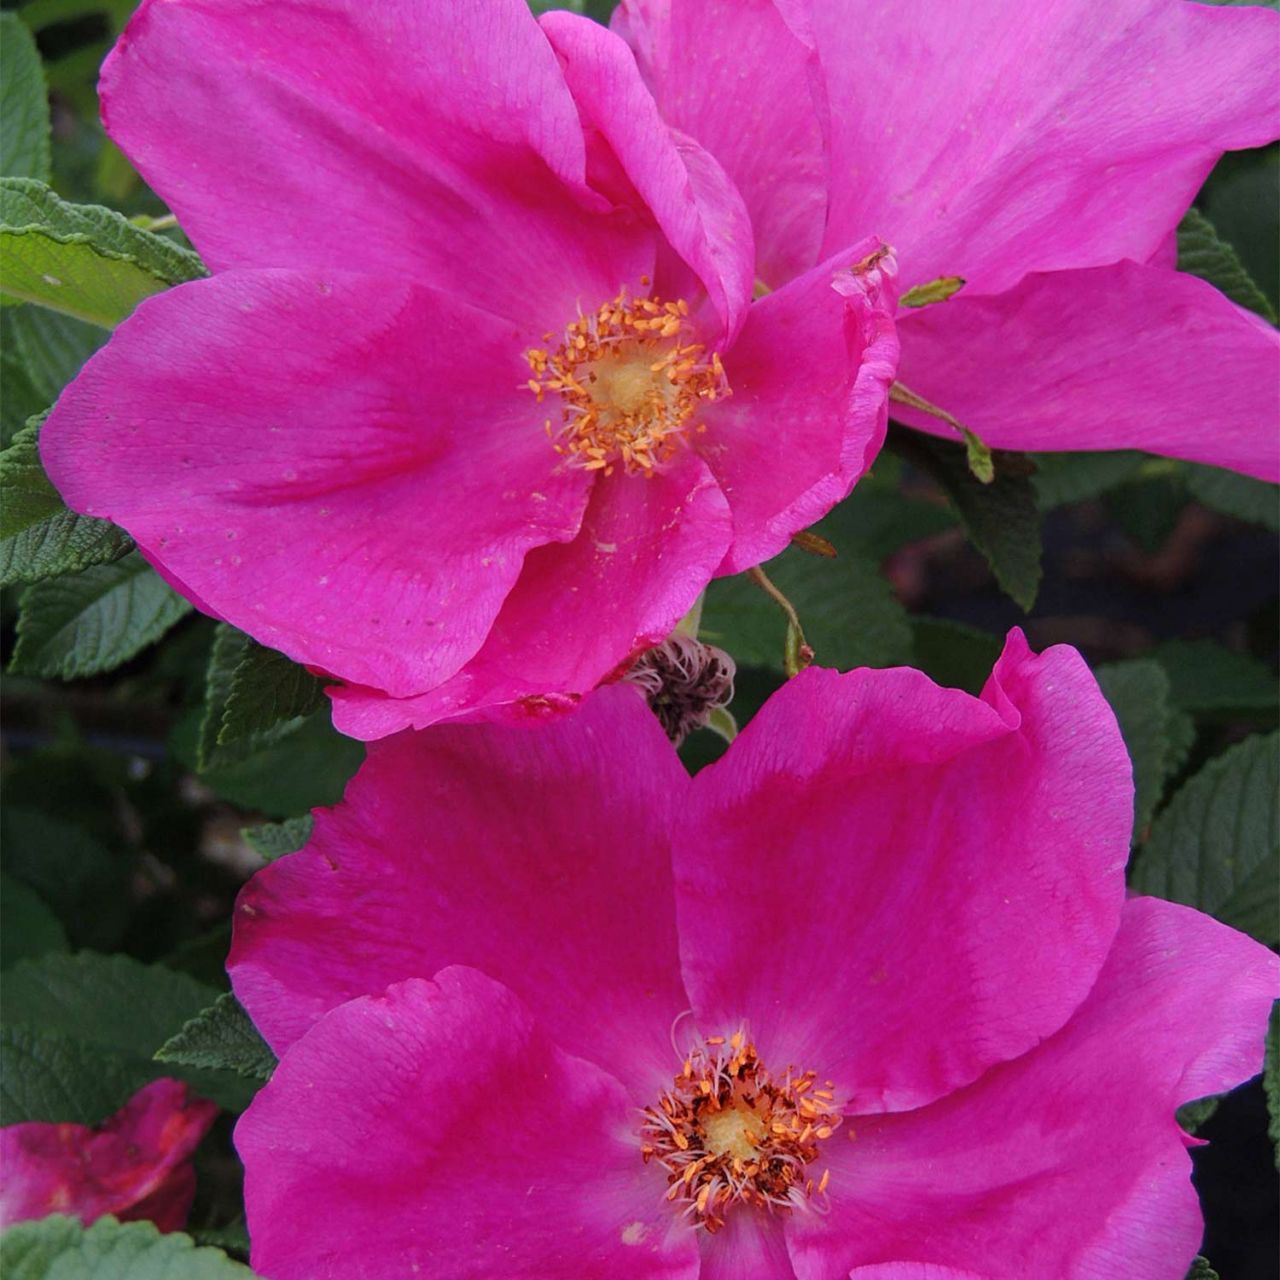  Apfelrose/Hagebutte 'Angelia Eglantine' - Rosa rugosa 'Angelia Eglantine'